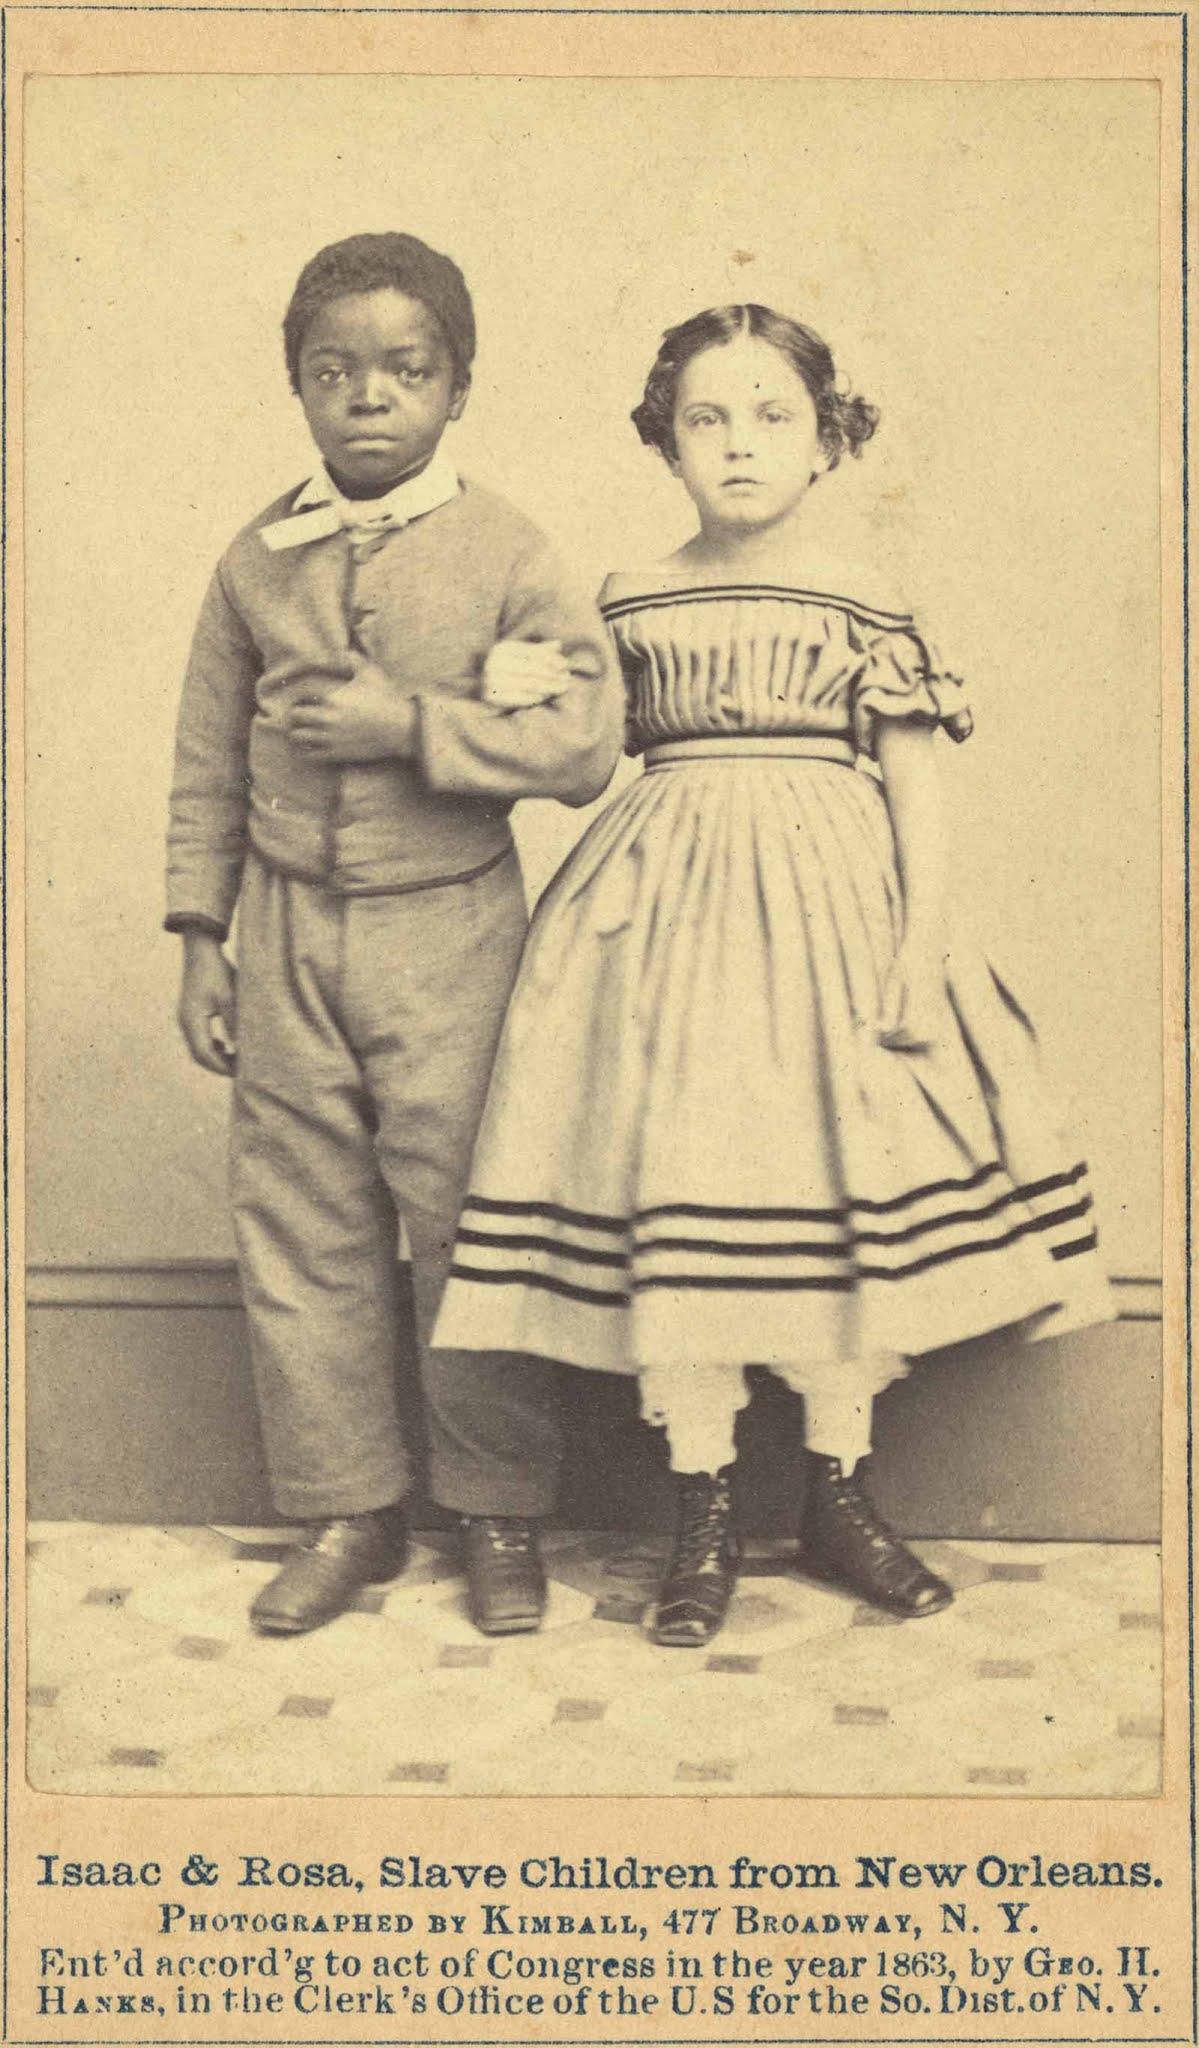 L'histoire d'Isaac et Rosa, les enfants esclaves émancipés de la Nouvelle-Orléans, 1863